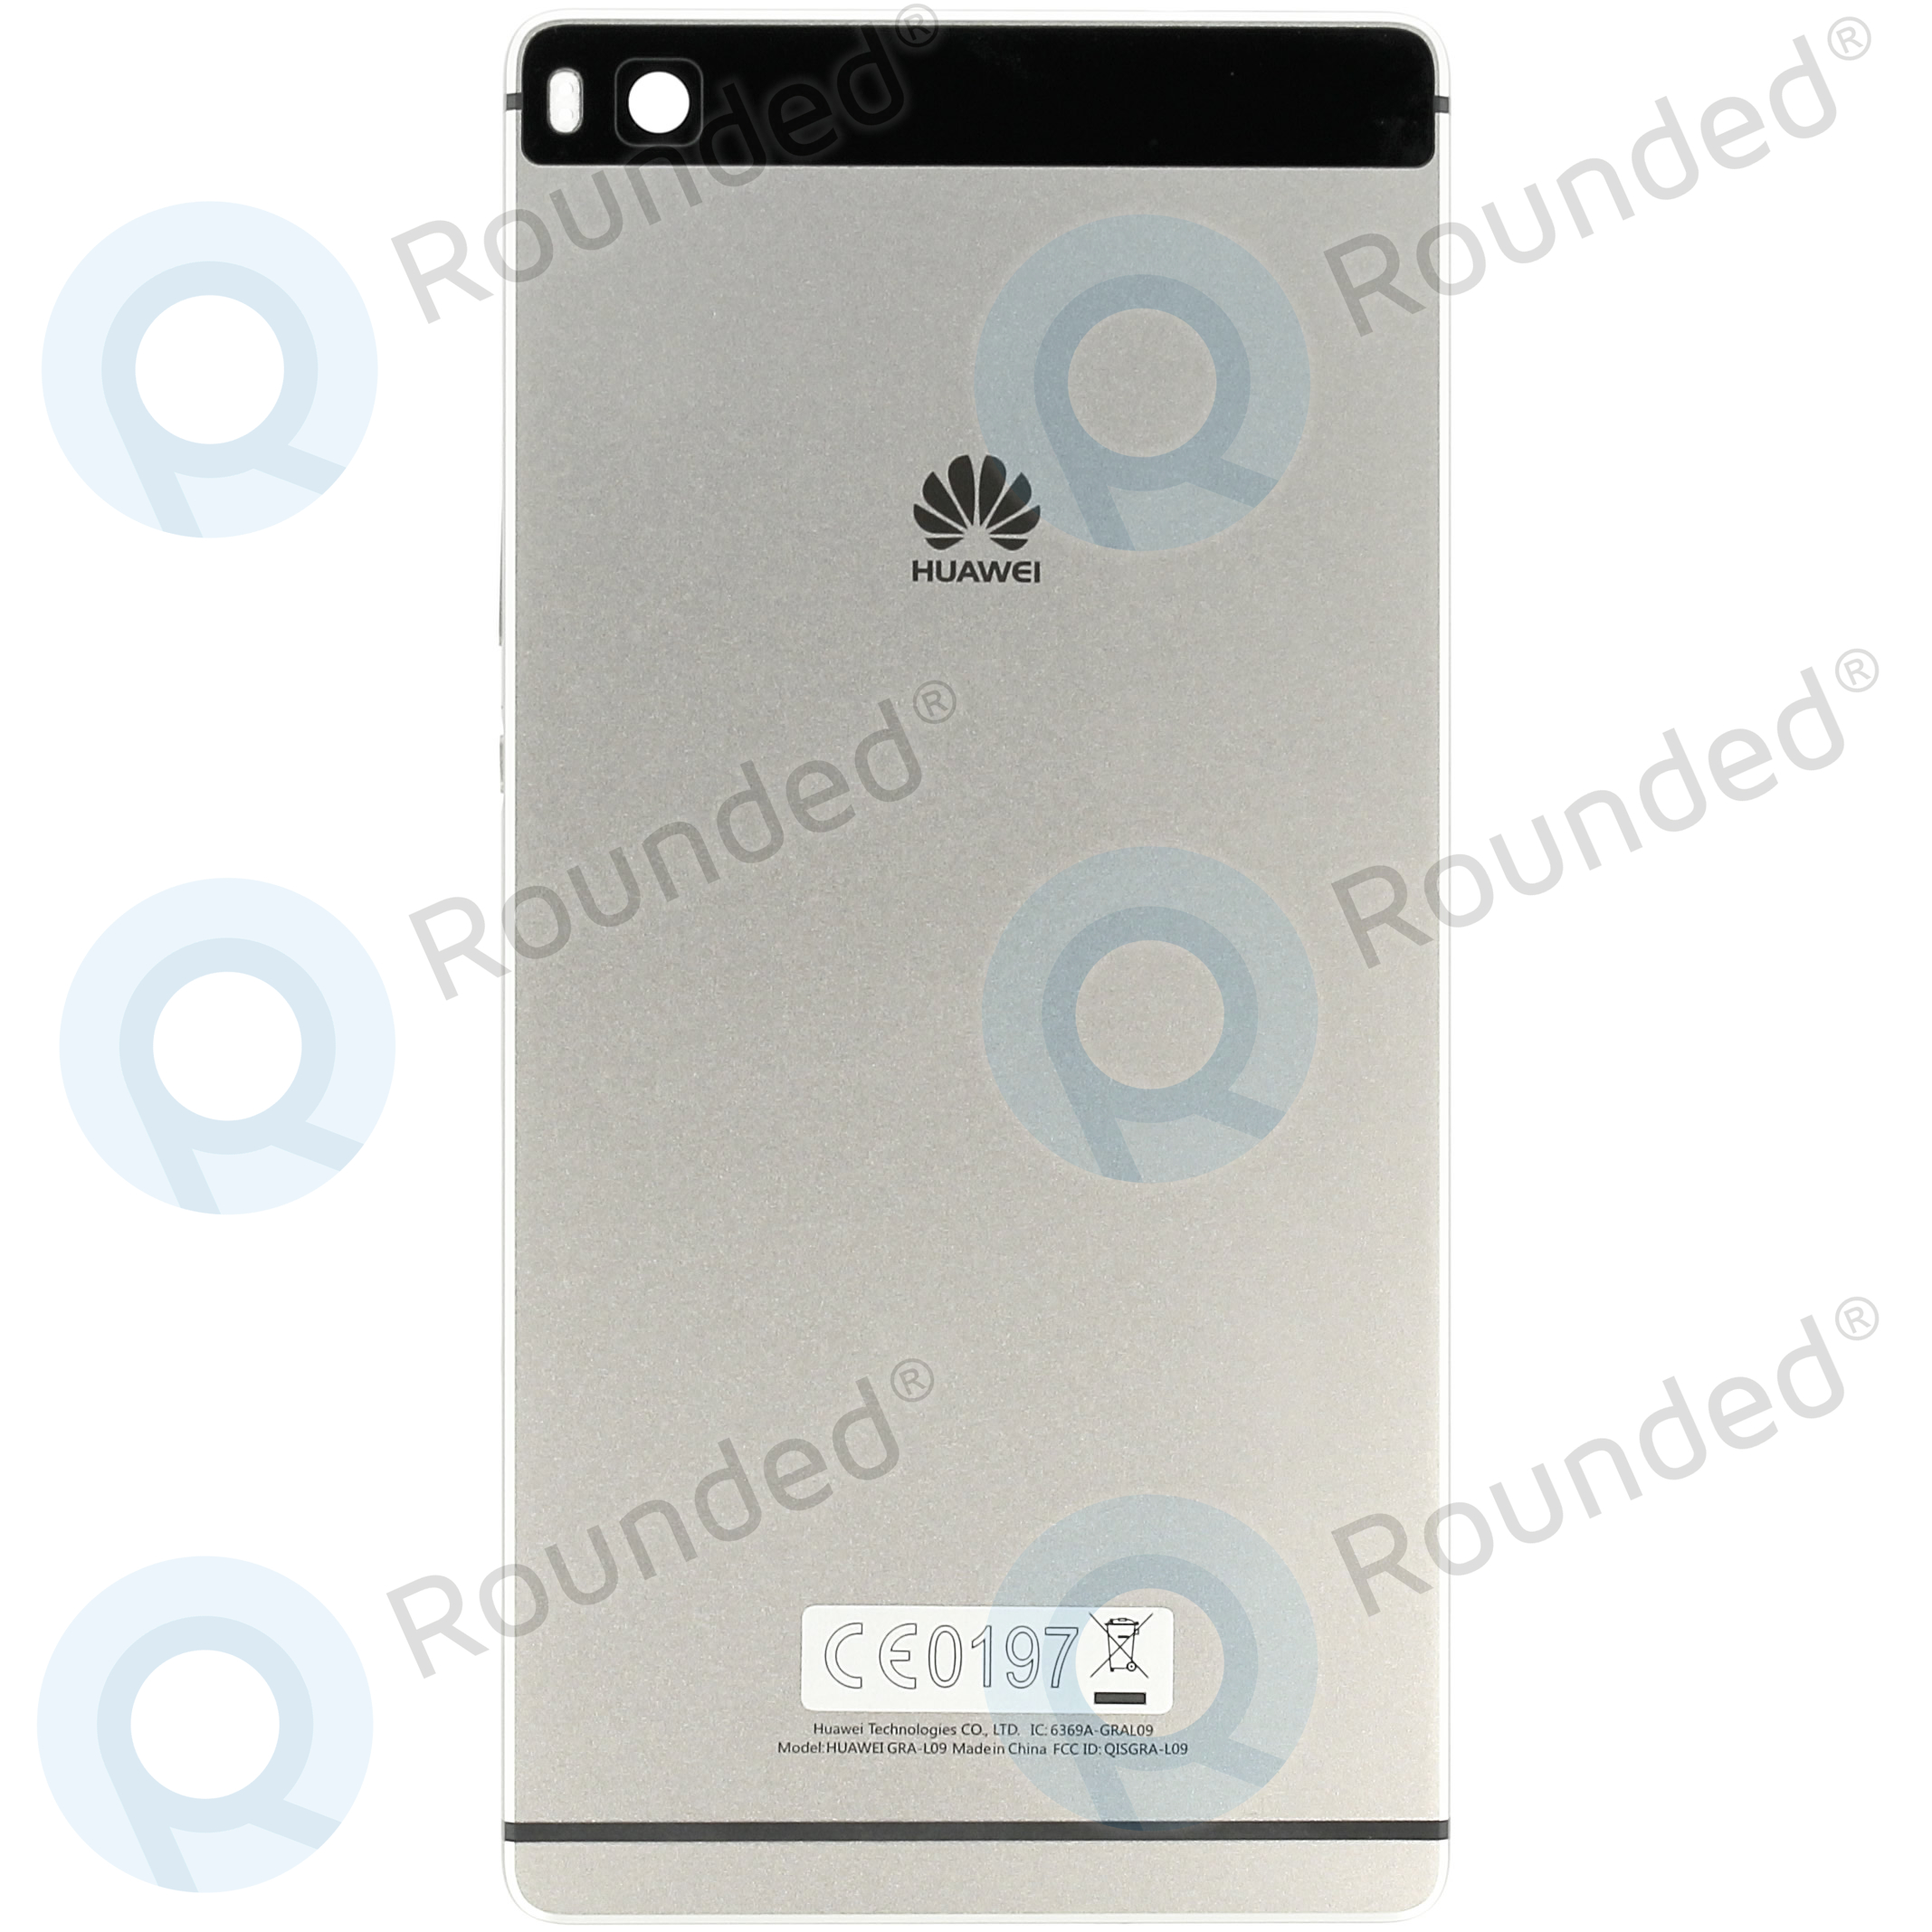 werkloosheid conservatief schrijven Huawei P8 (GRA-L09) Battery cover black 02350GRV